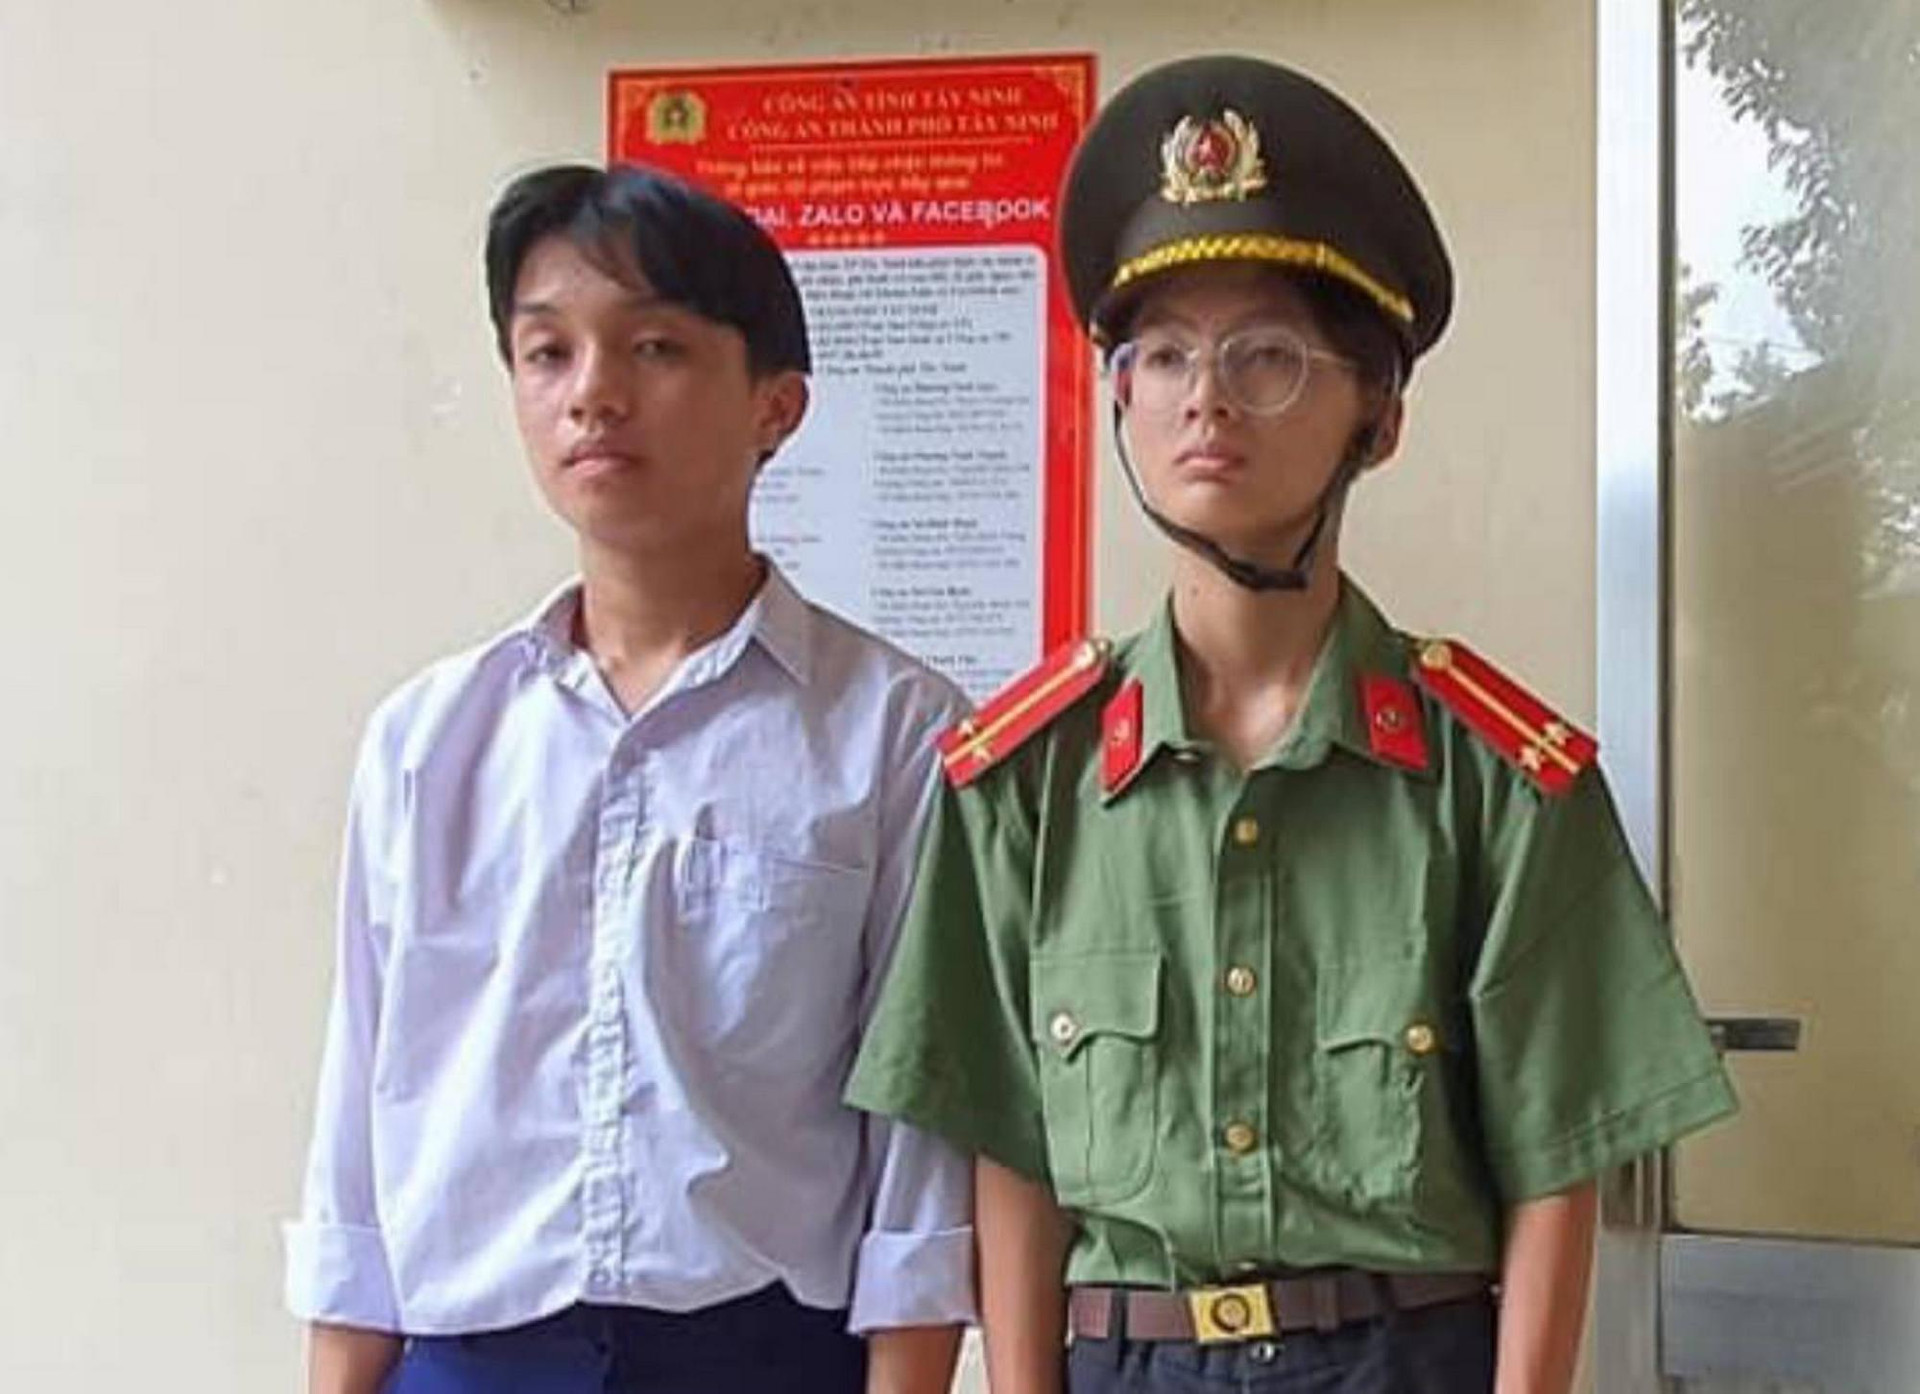 Tây Ninh: Thiếu tiền chơi game, mạo danh công an đi thu tiền tiệm cầm đồ - 1